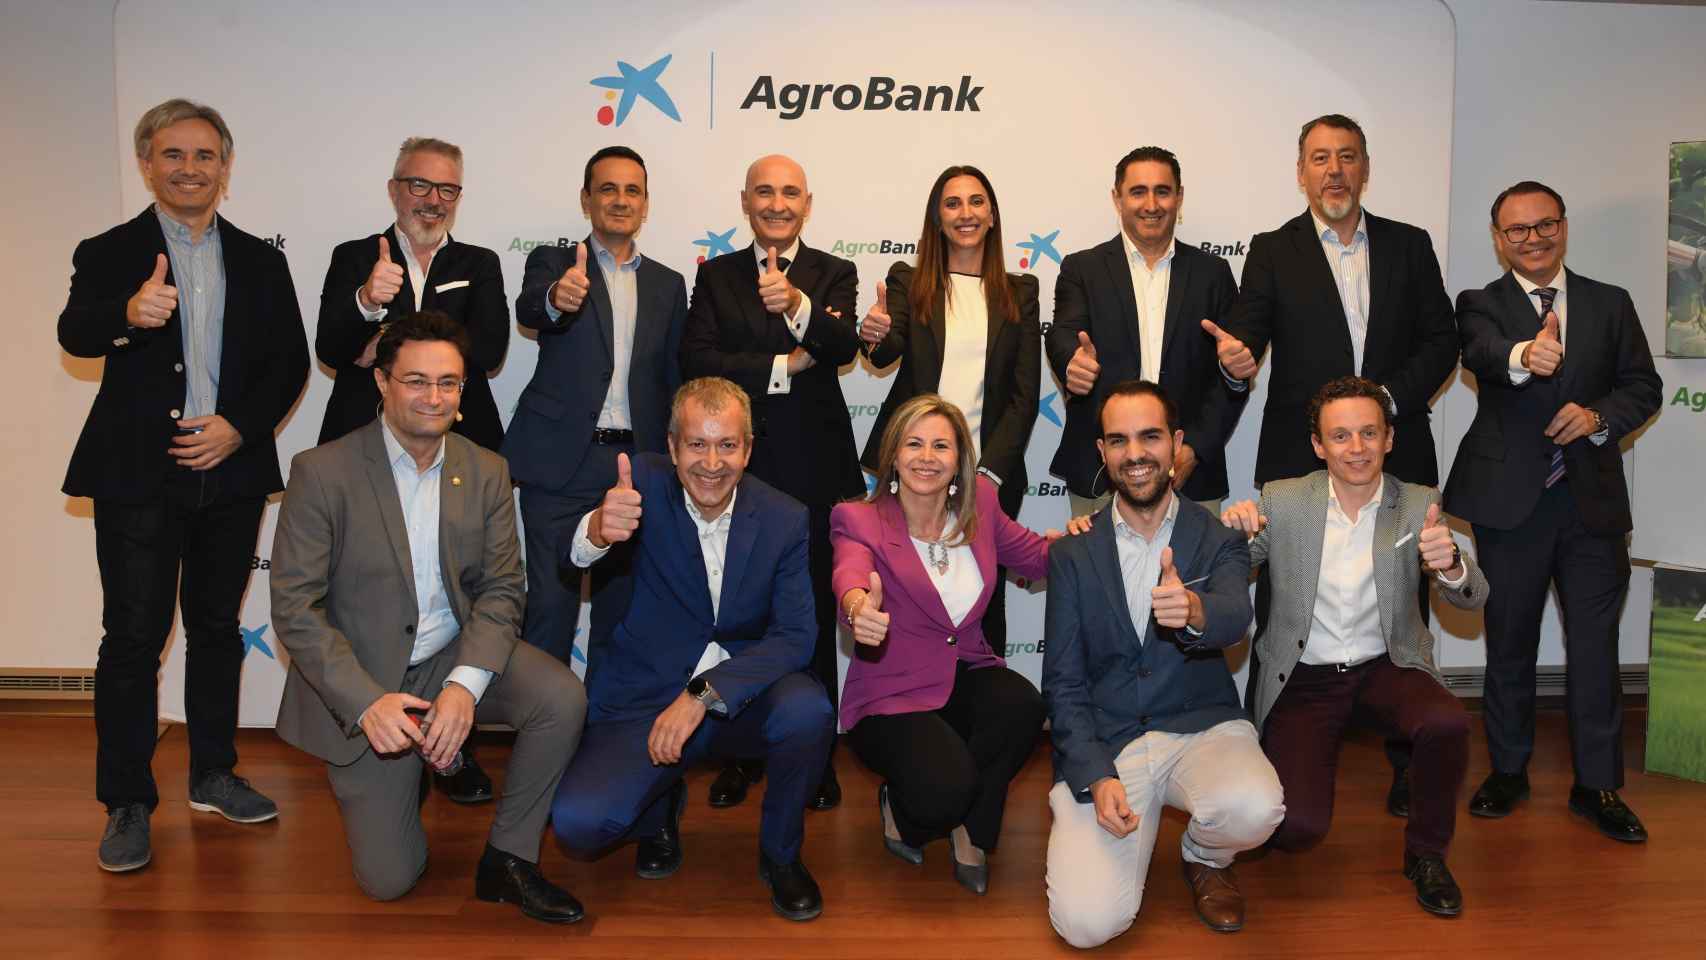 Representantes de AgroBank e Innsomnia, este lunes, durante la presentación de la segunda edición del AgroBank Tech Digital INNovation en Murcia.